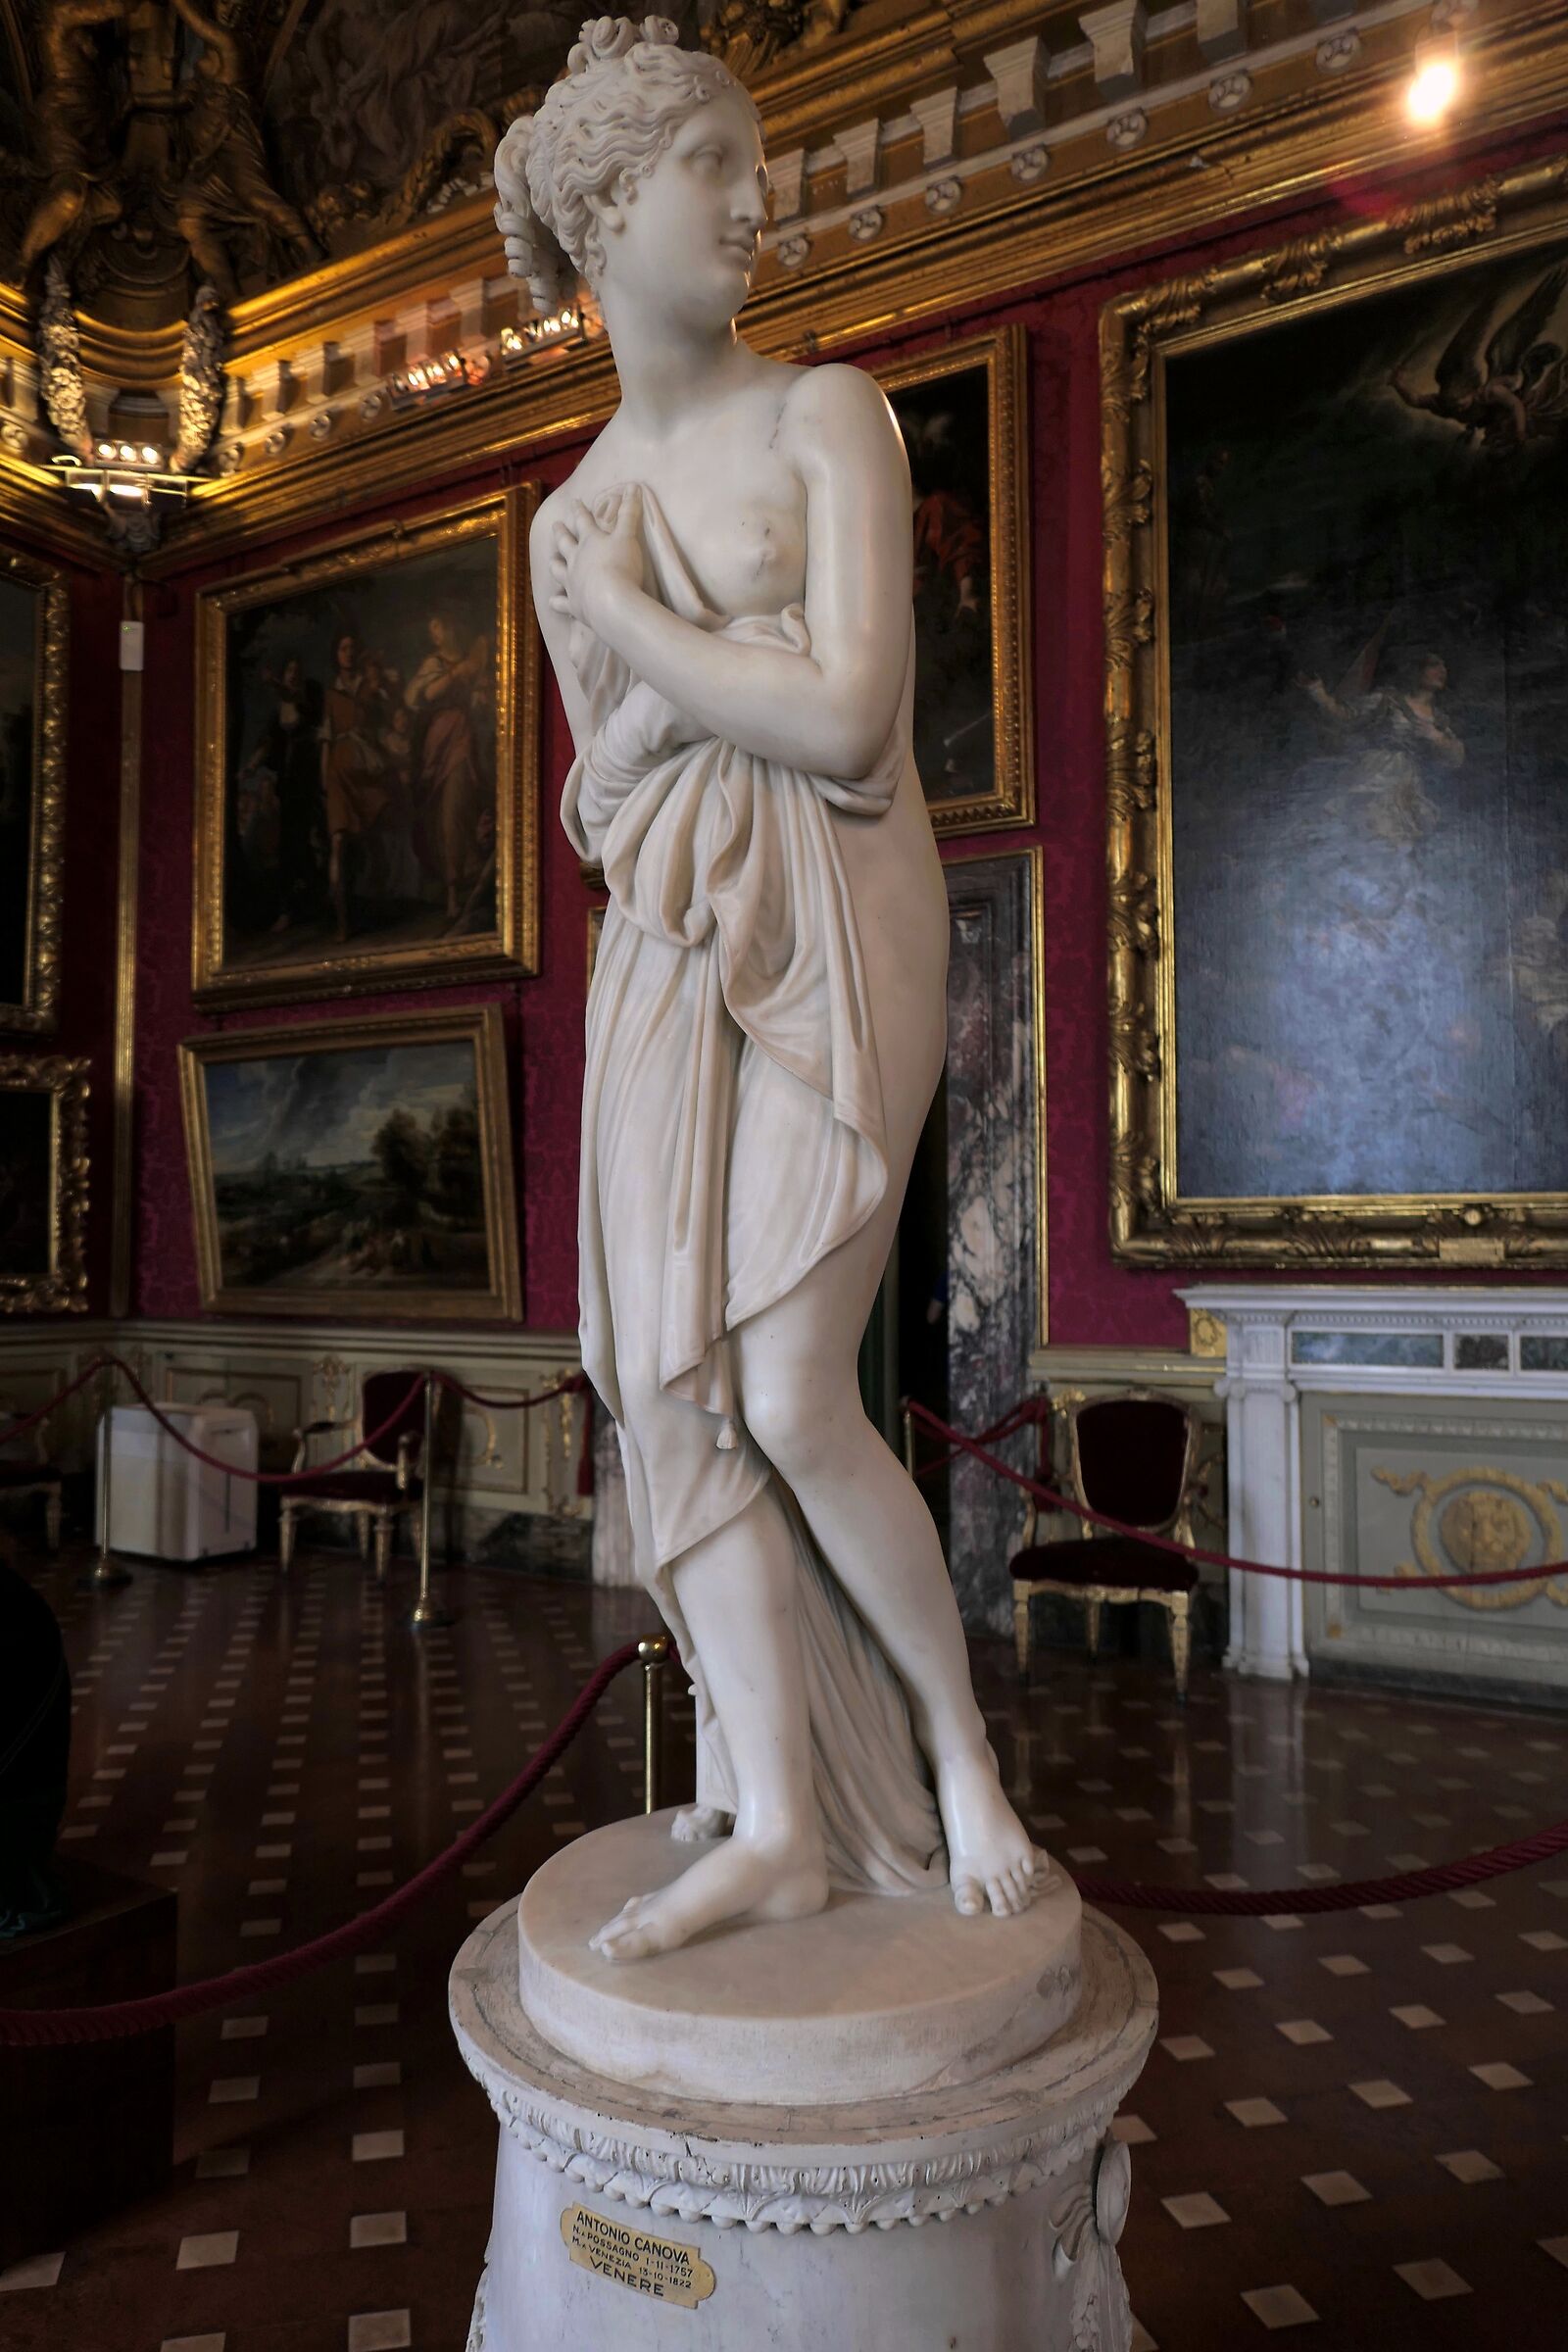 Palatine Gallery - Antonio Canova "Venus"...